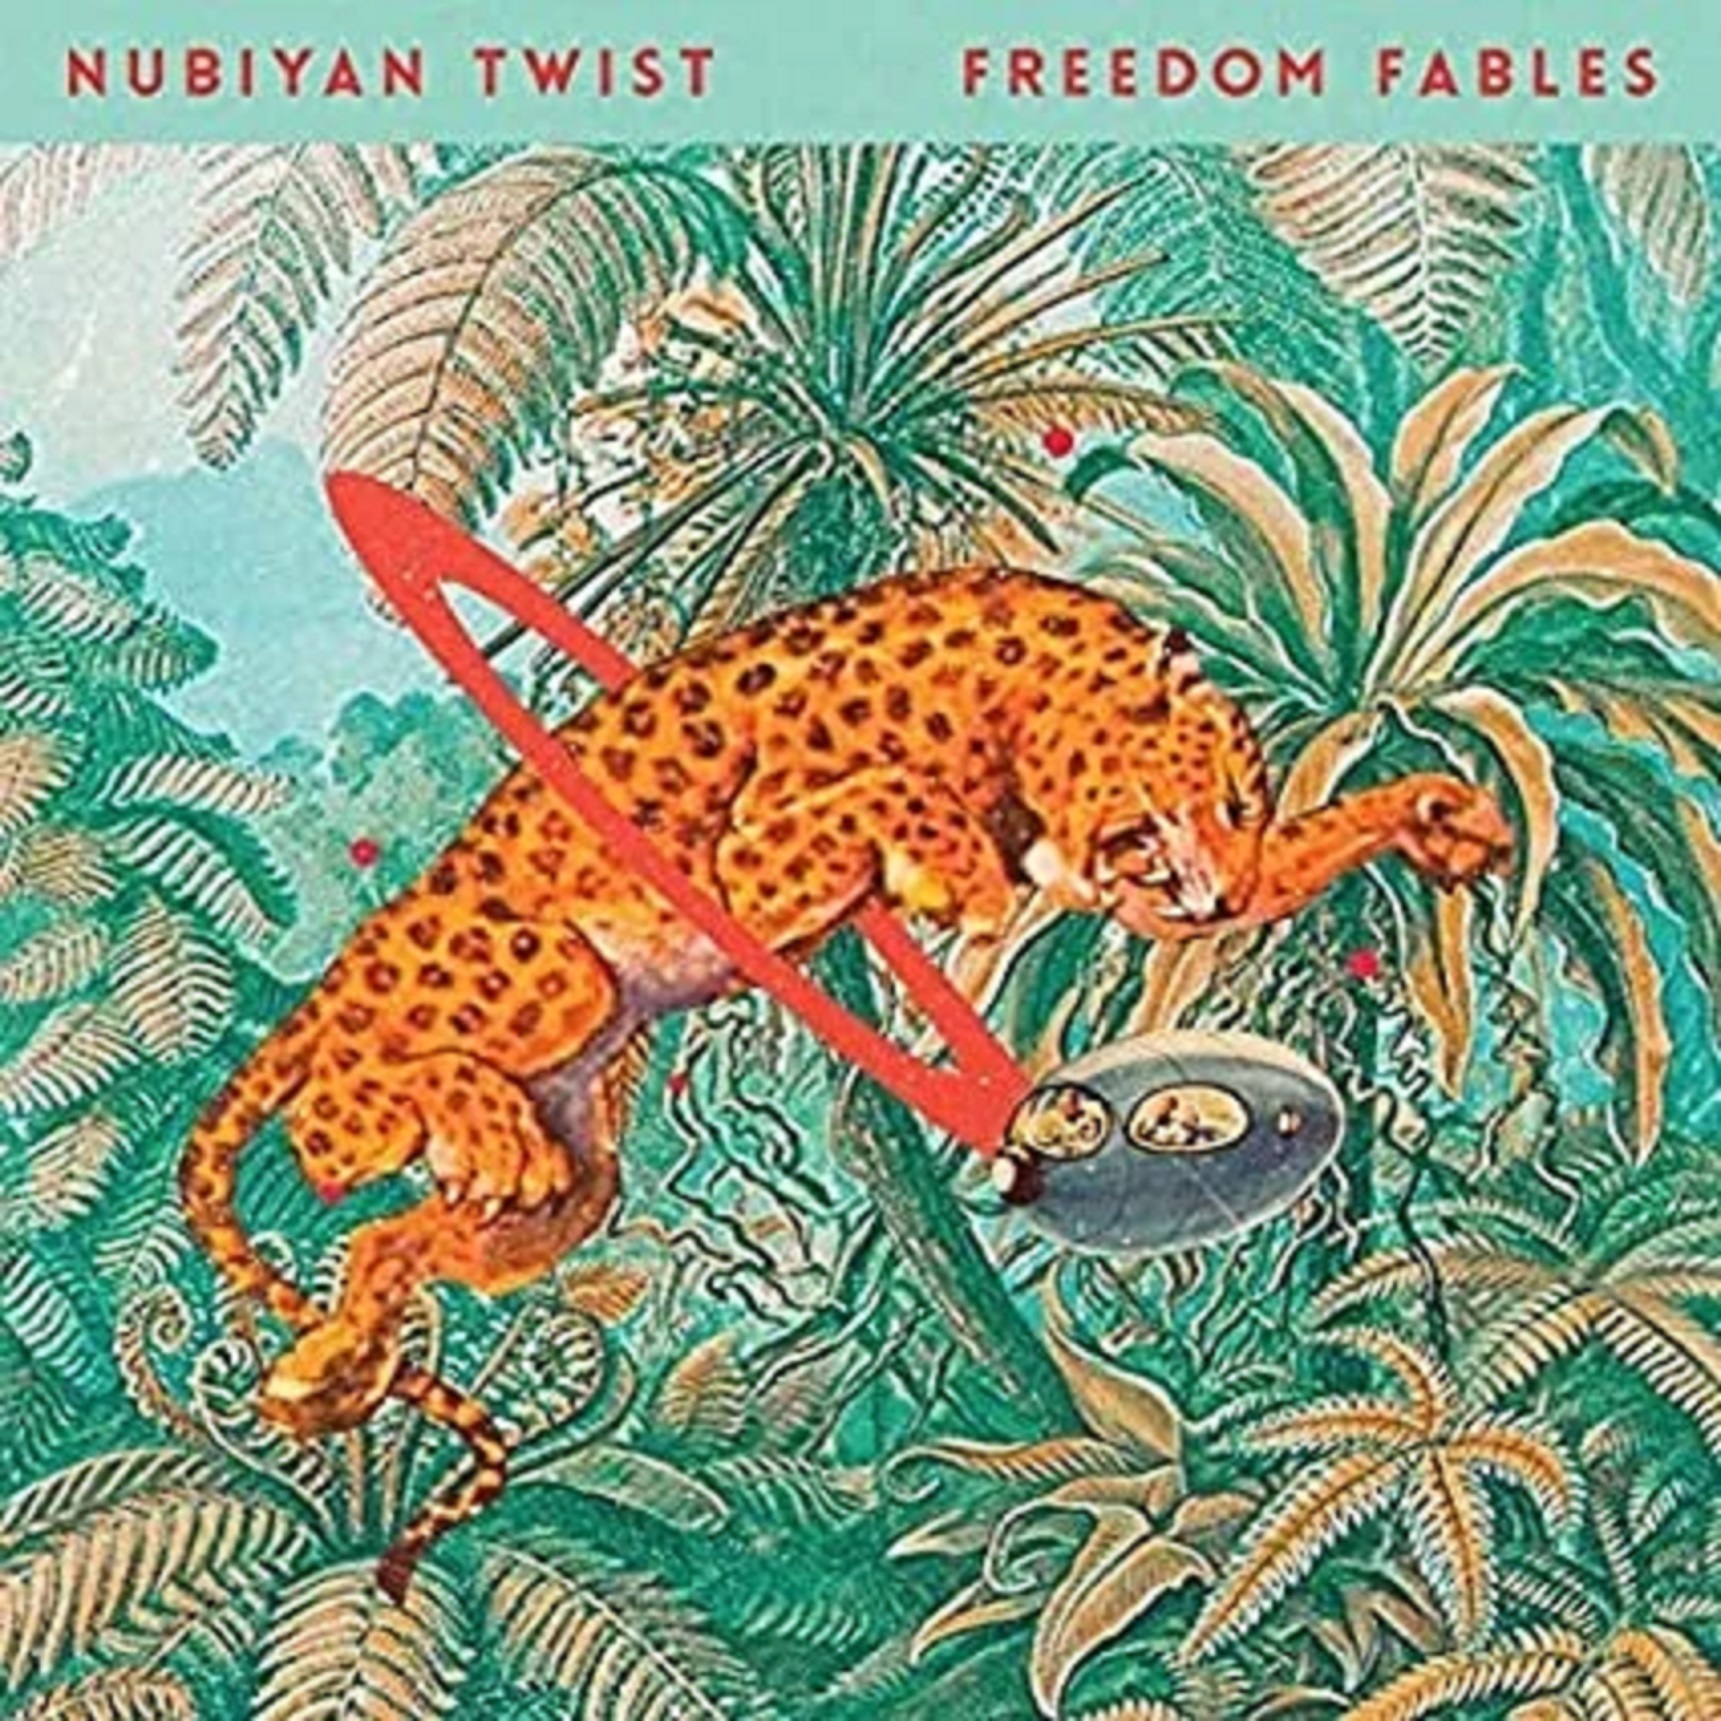 Freedom Fables | Nubiyan Twist